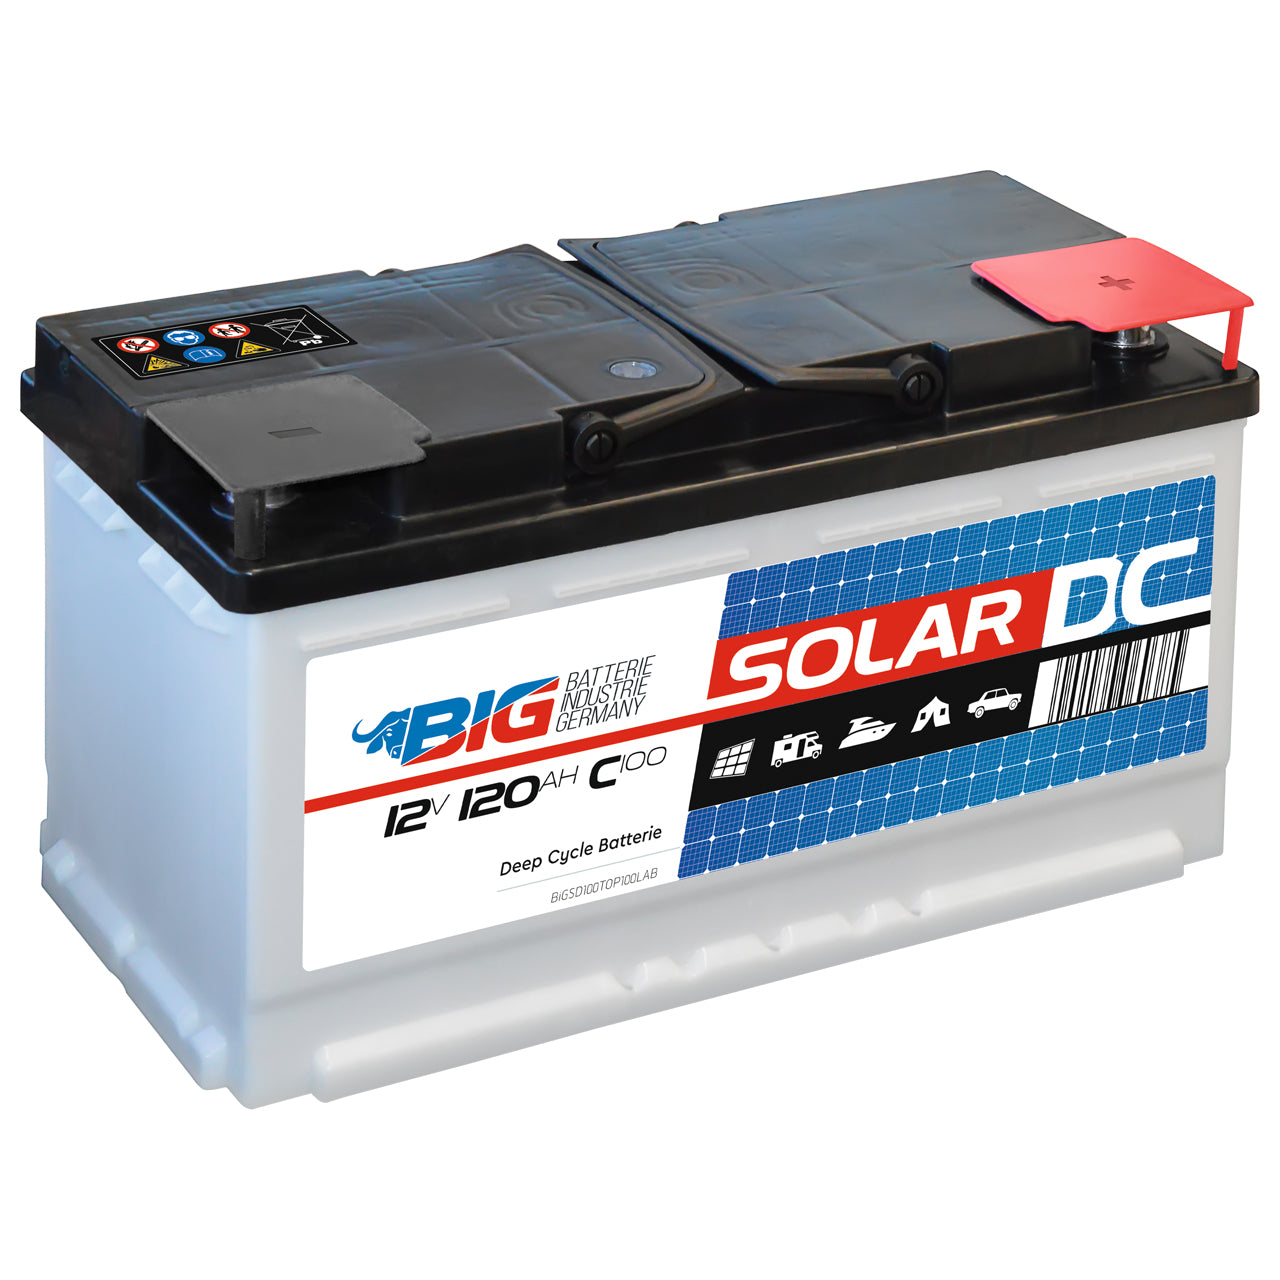 Solarbatterie 120Ah 12V von BIG für Wohnmobil, Boot